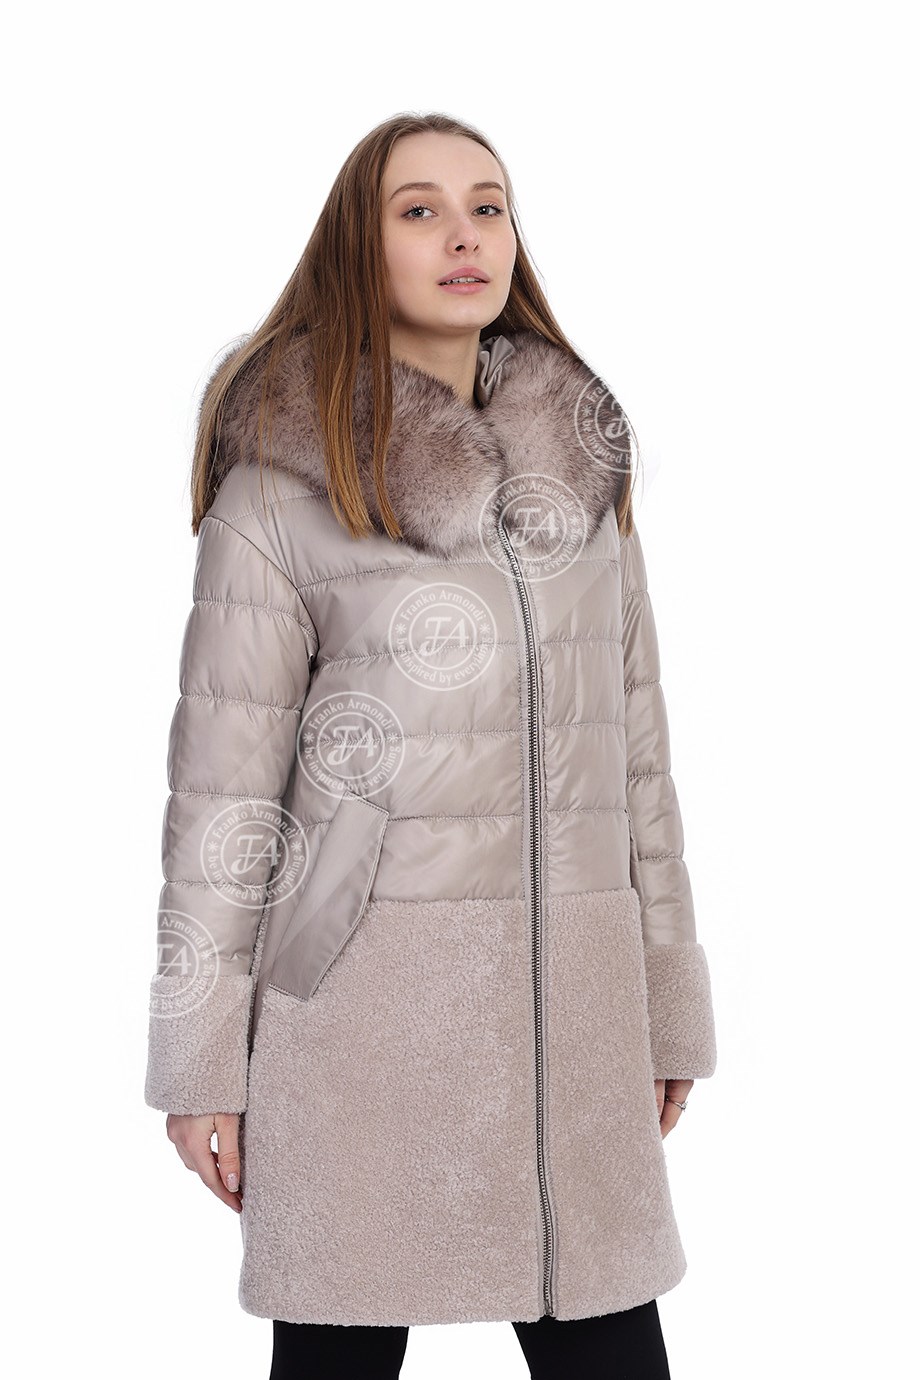 Женская куртка из натуральной кожи Классический Зима Пальто С капюшоном  Водонепроницаемый Астрахань Лиса Бежевый YBU-1468-19727 FA2